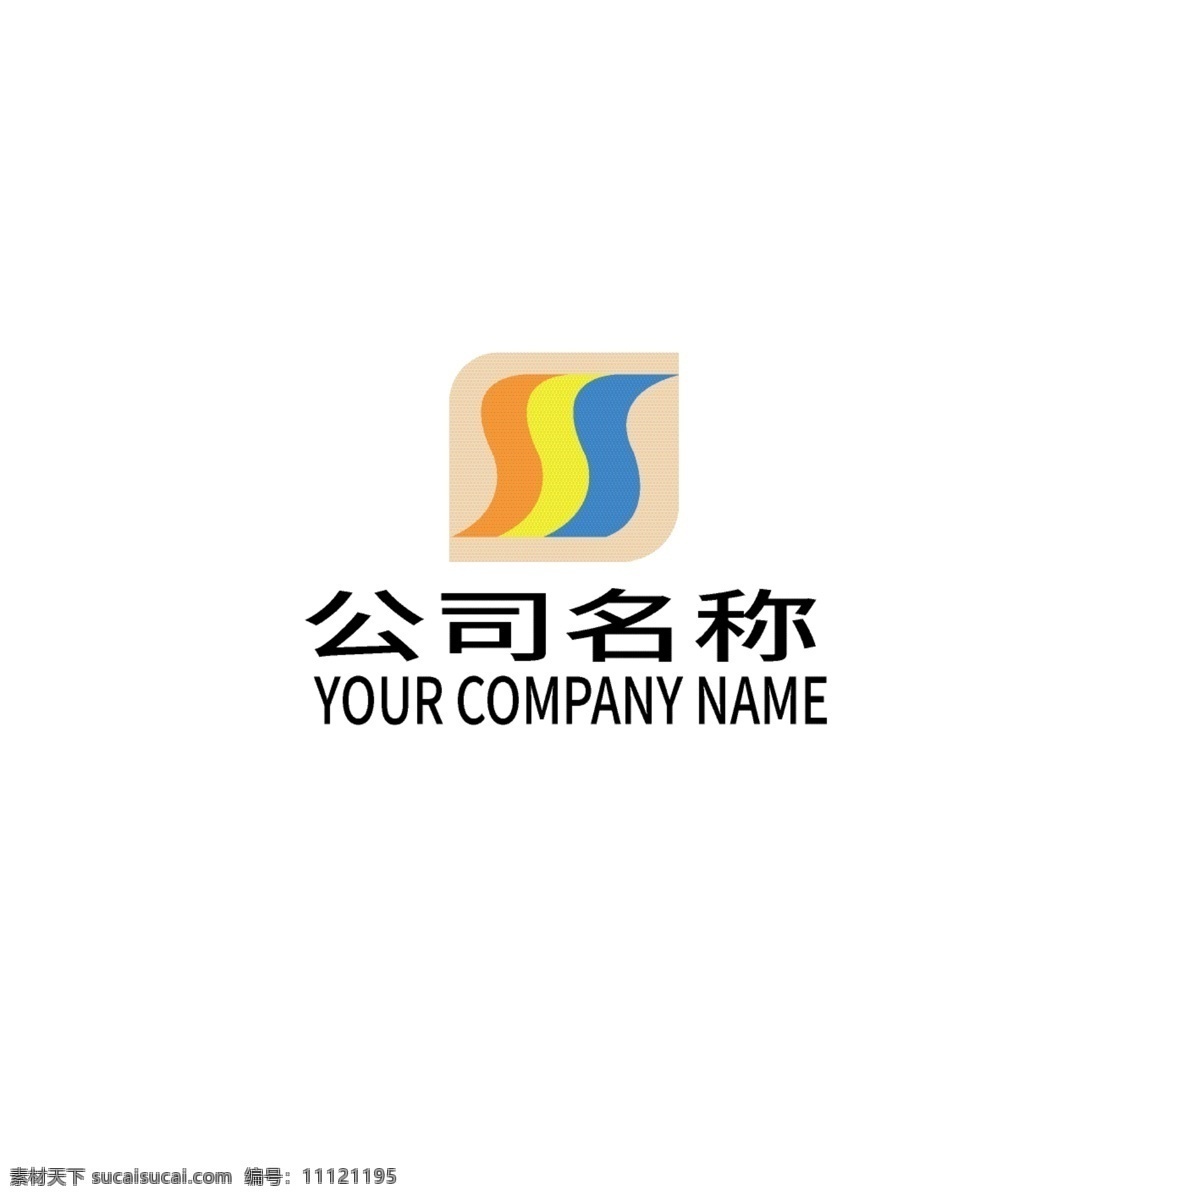 多彩 叠加 logo logo设计 文字 公司 品牌 网站 字母